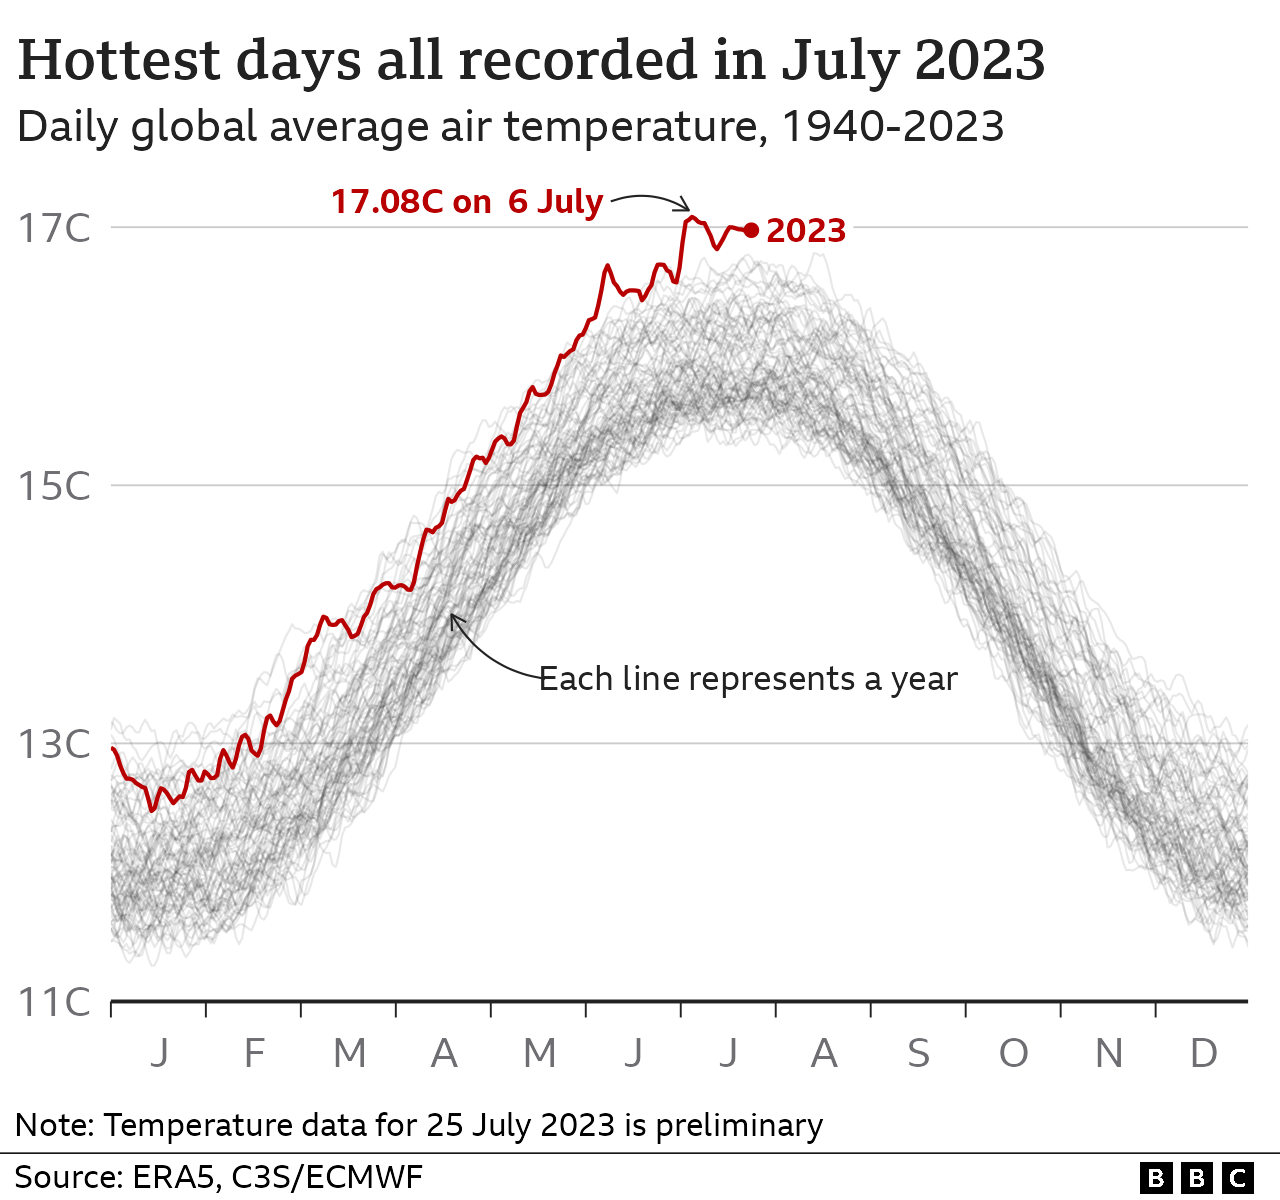 Многолинейная диаграмма, показывающая среднесуточную глобальную температуру по годам с 1940 года. 2023 год показывает самые высокие температуры, включая установленный рекорд 6 июля 17.08C